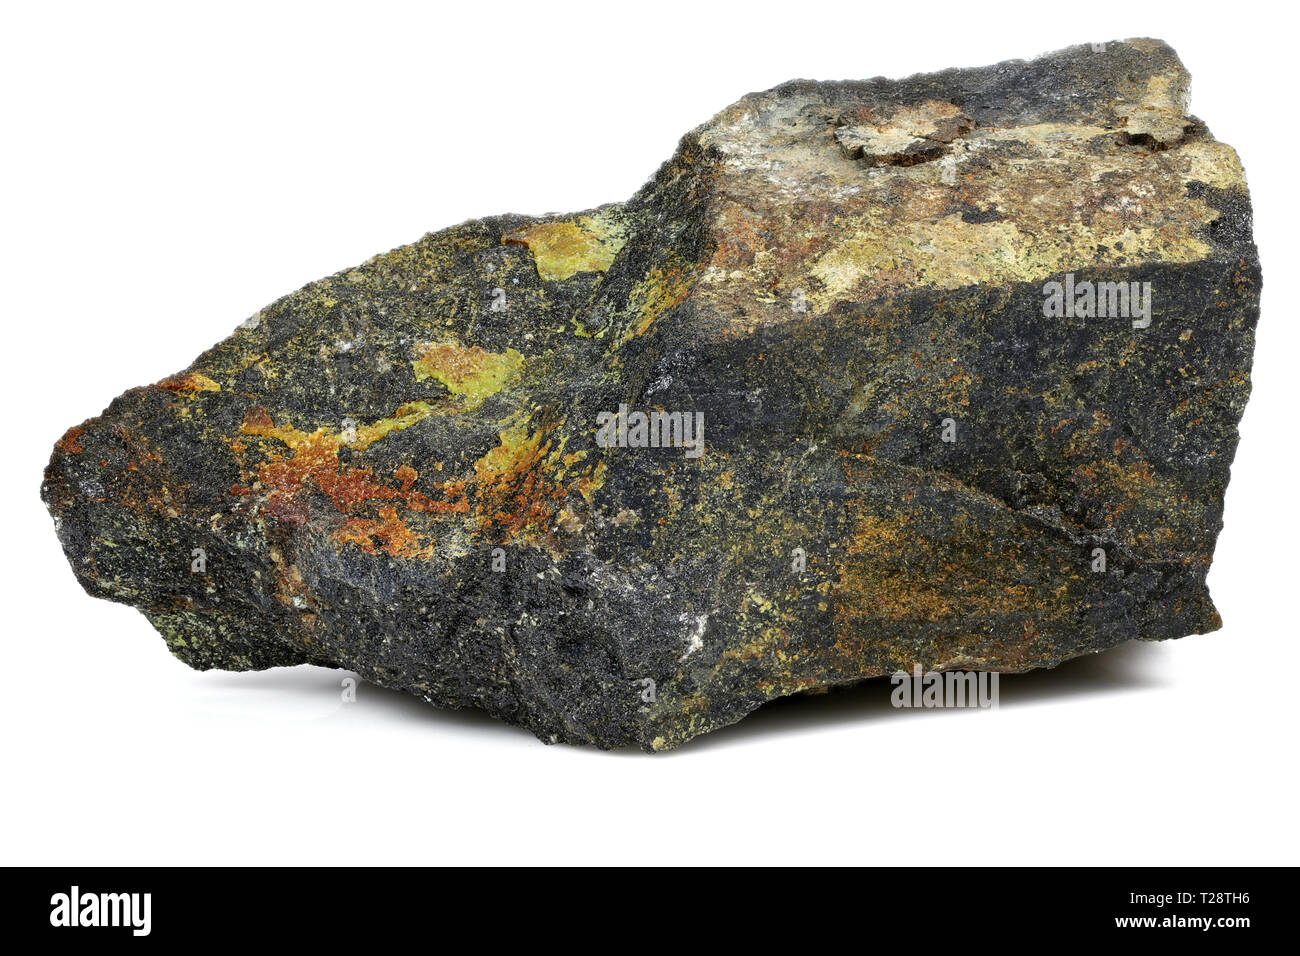 uranium ore (pitchblende with uranophane) from Australia isolated on white background Stock Photo